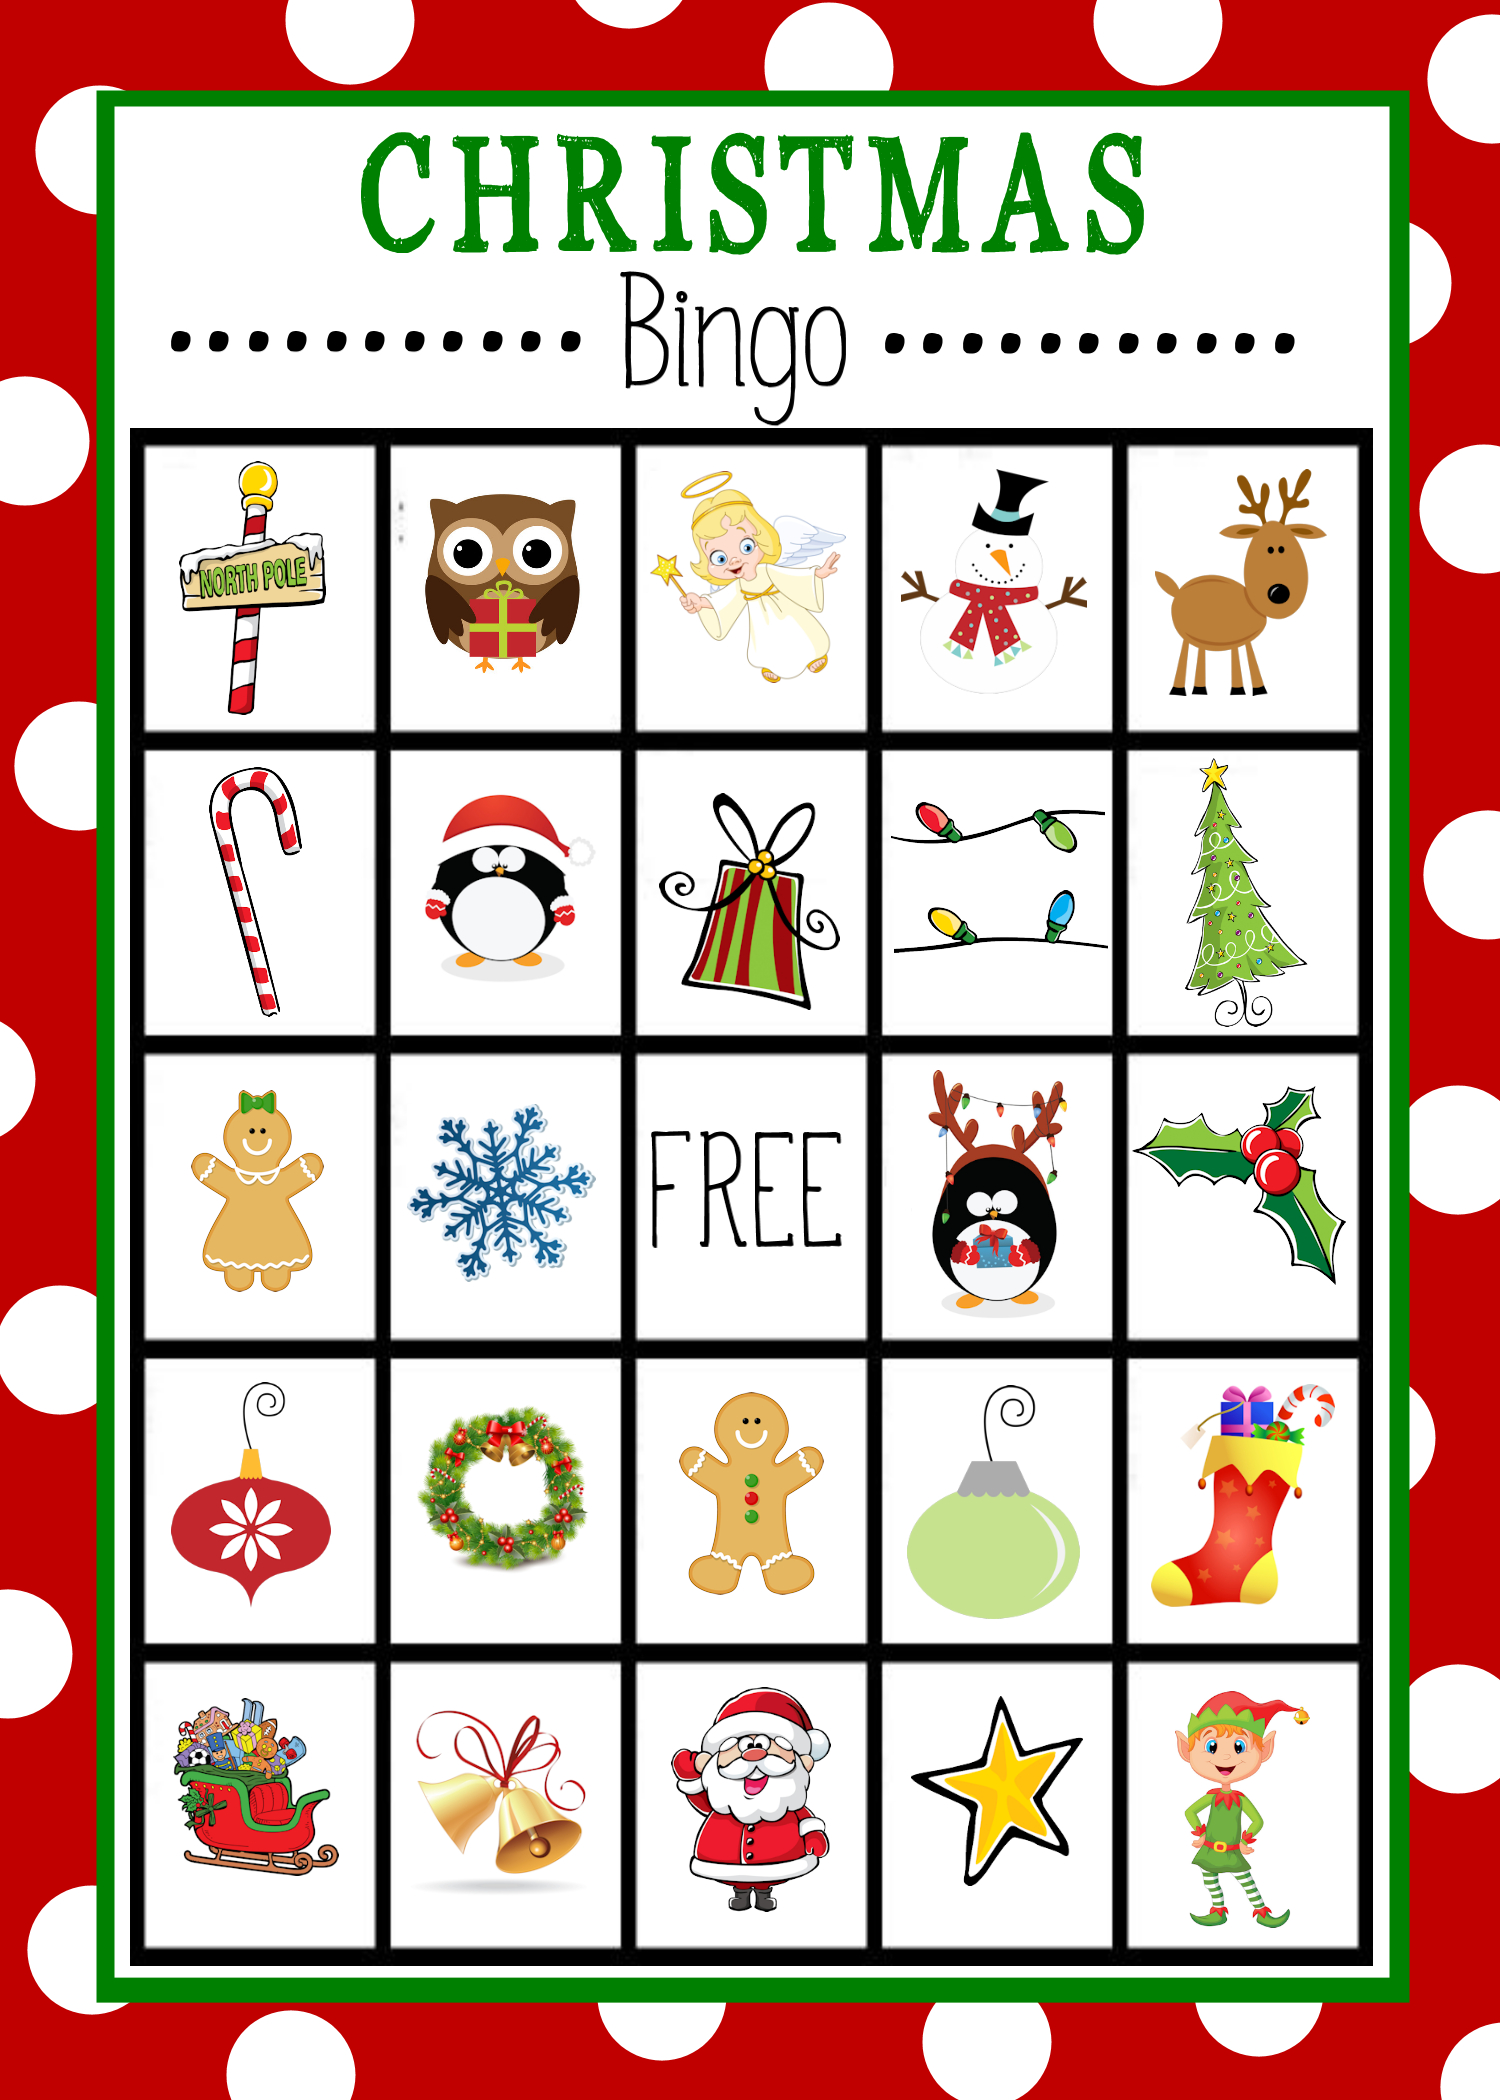 Free Printable Christmas Bingo Game | Christmas | Pinterest - Free Printable Christmas Board Games